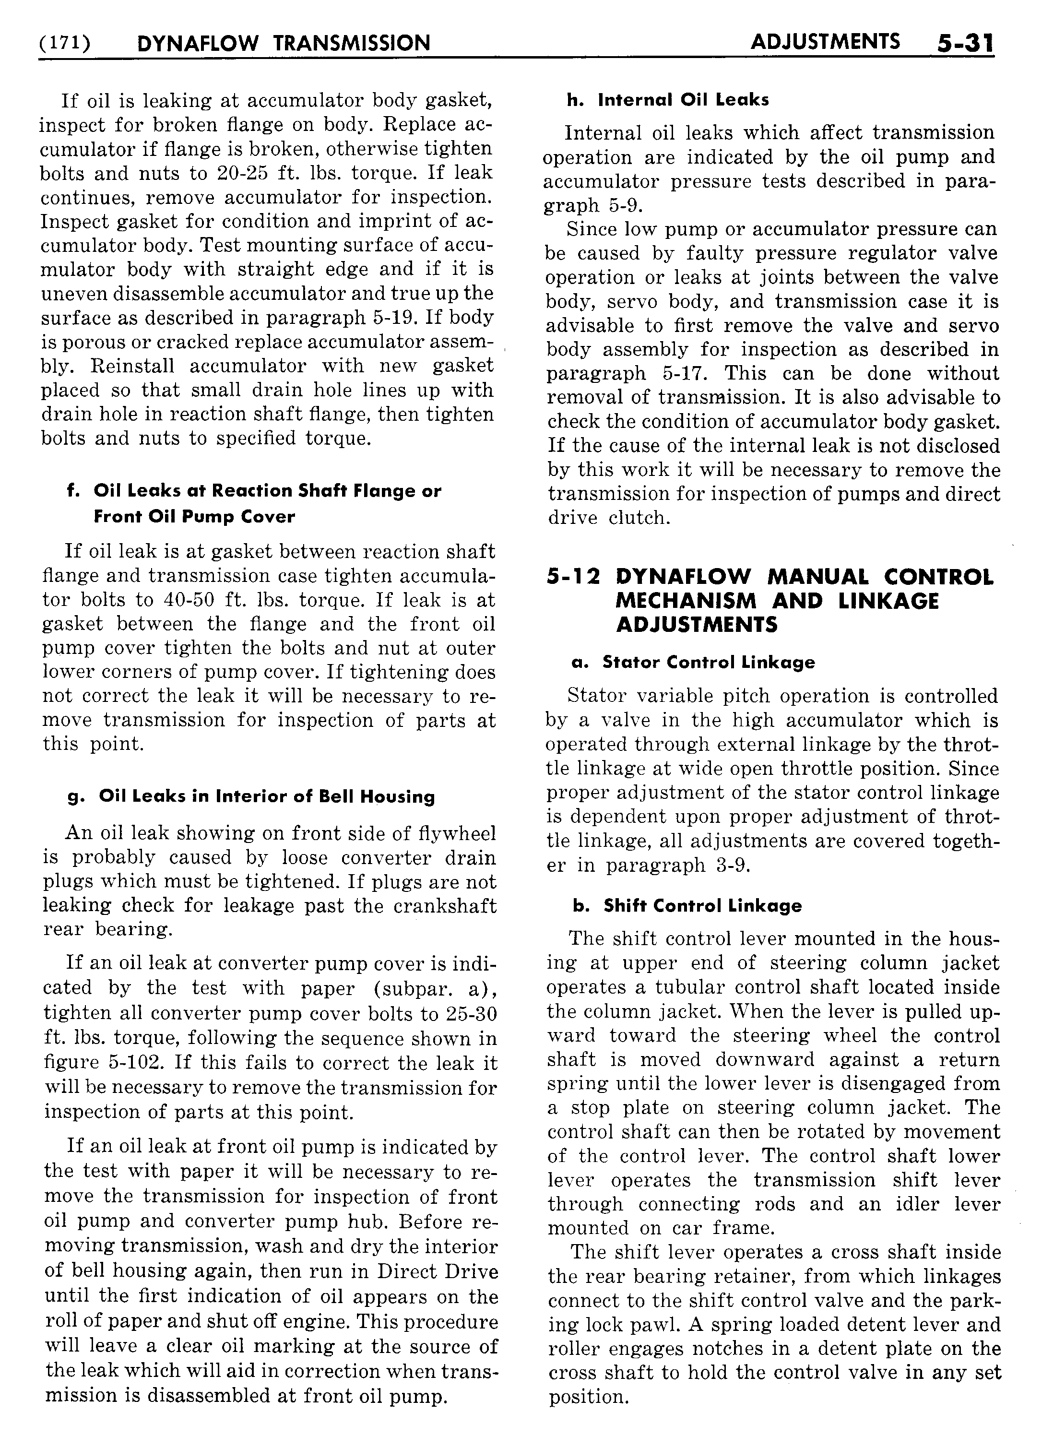 n_06 1955 Buick Shop Manual - Dynaflow-031-031.jpg